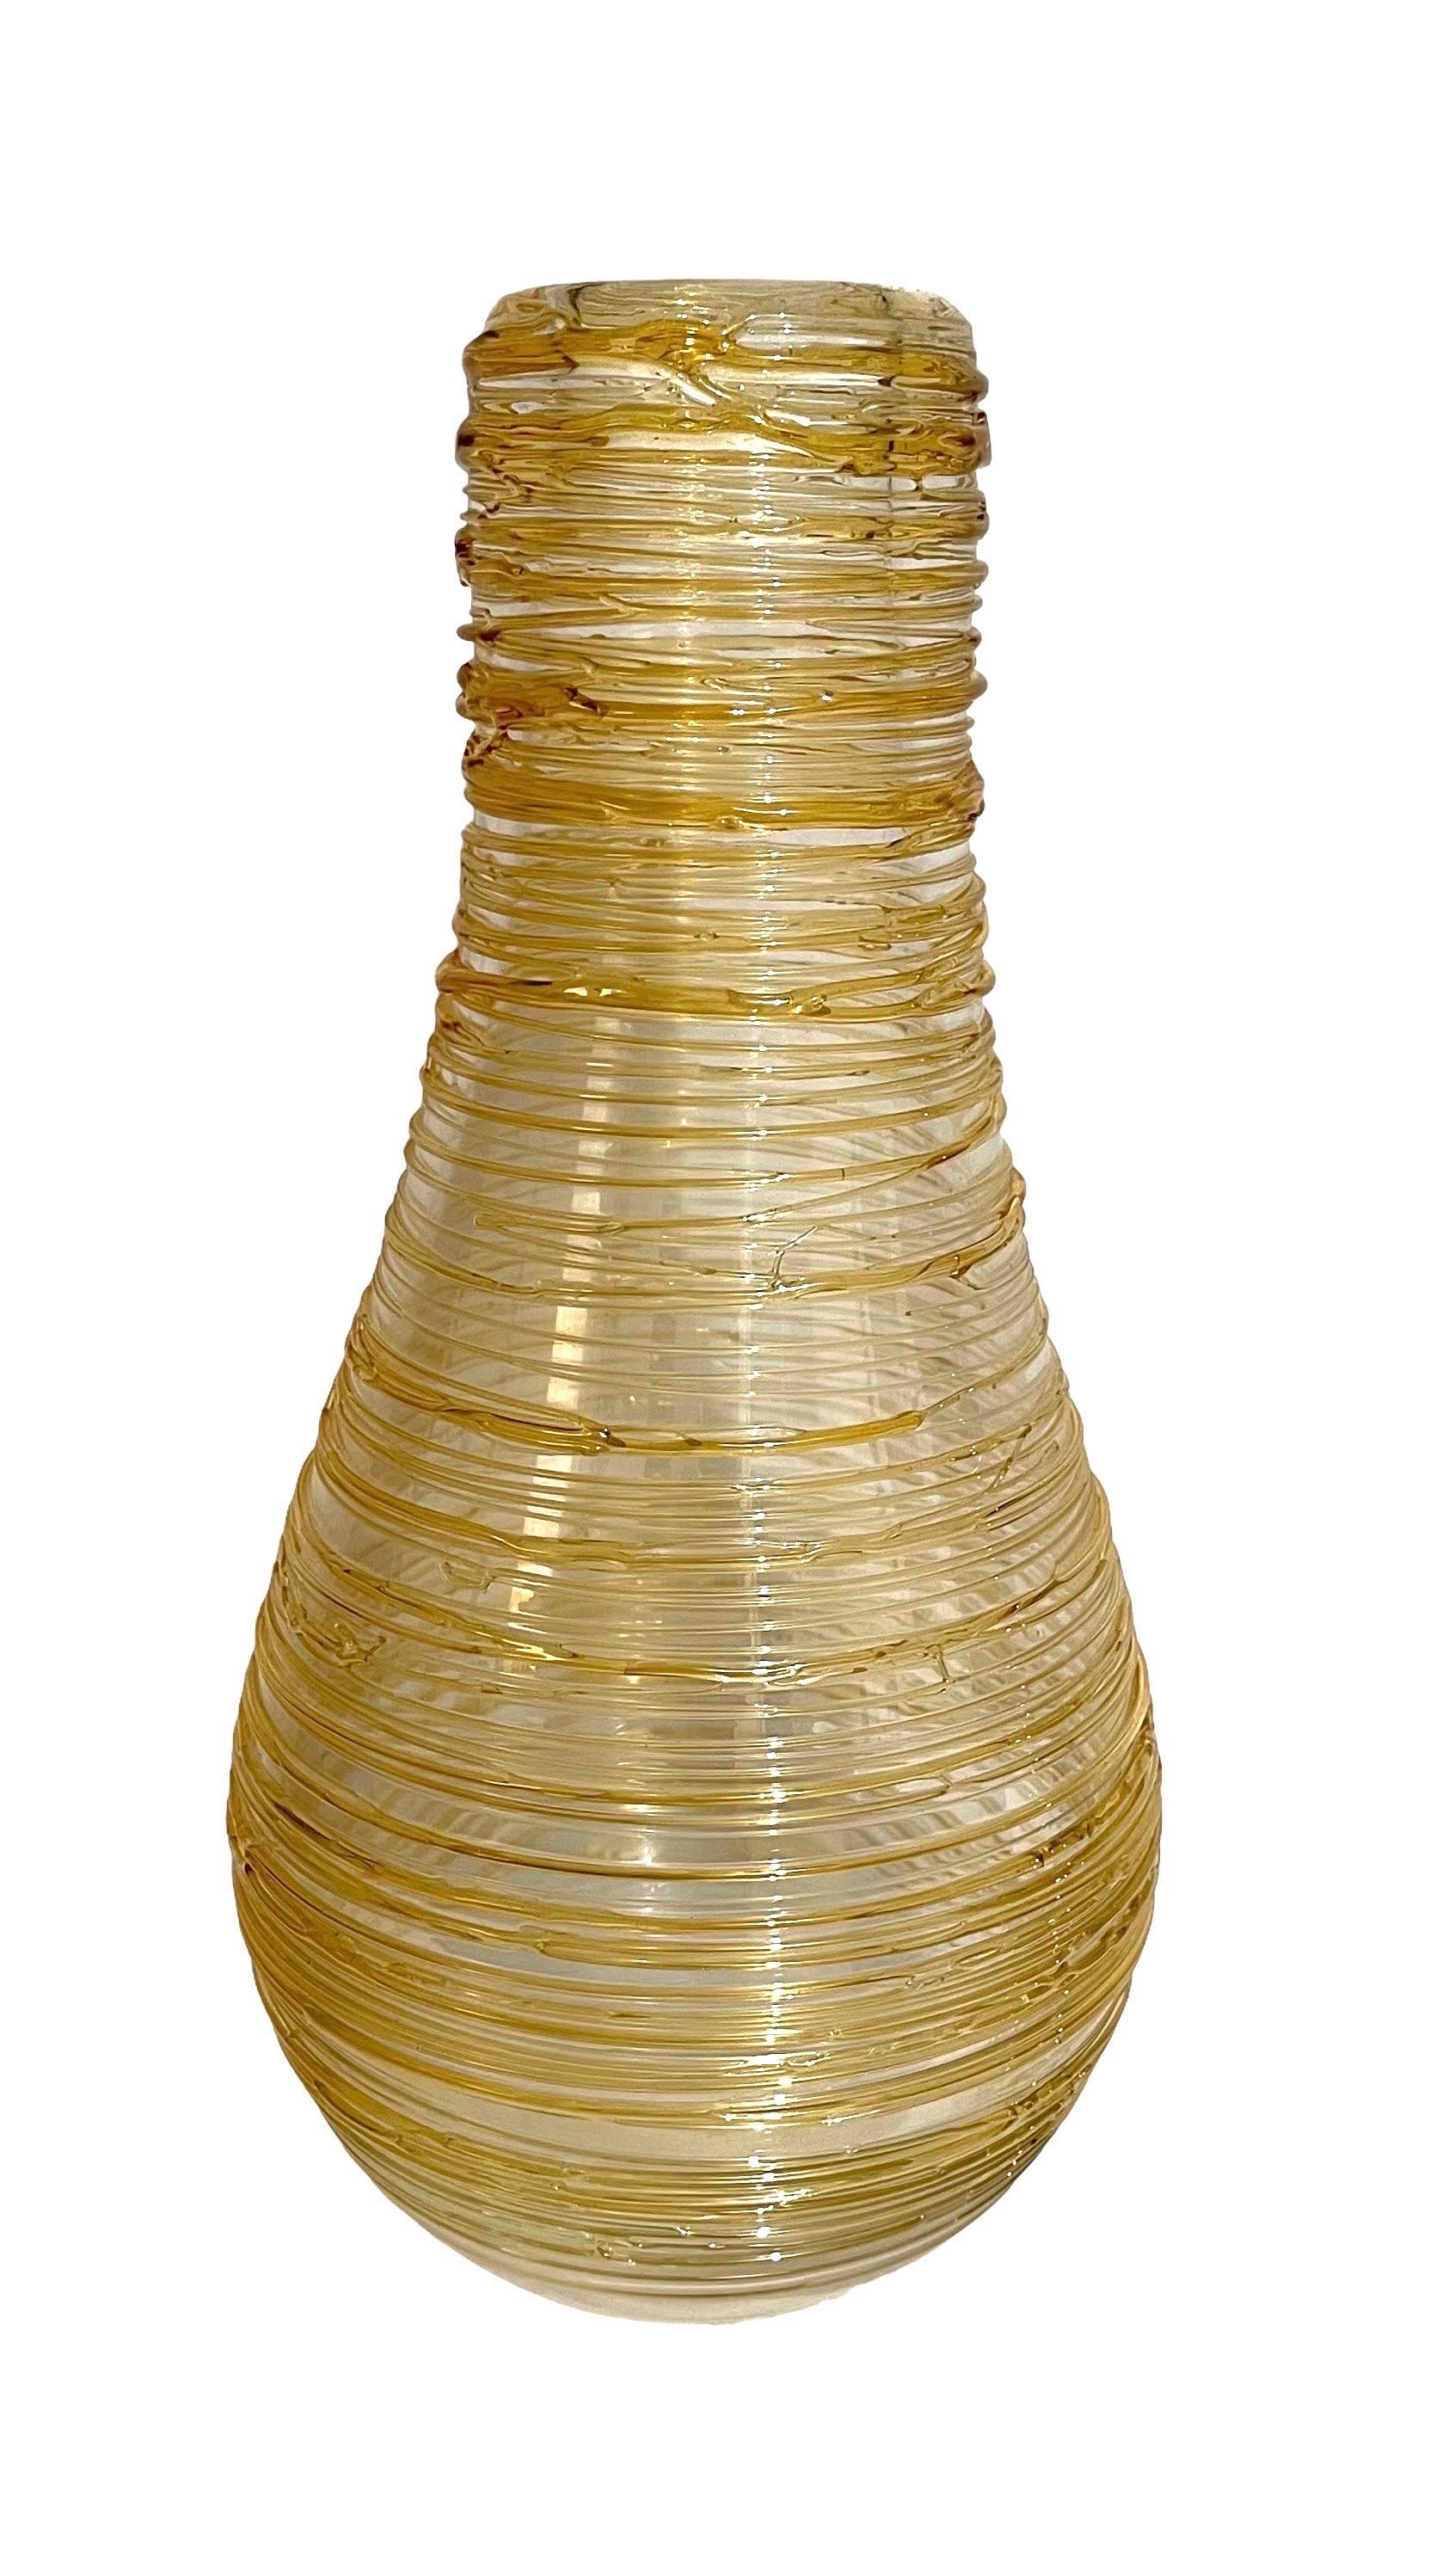 

Dimensions : 15.5 X 7 X 7 in. 
Ce vase de forme organique présente un motif filaire appliqué de couleur or clair qui entoure le corps transparent. Signé de la main de Constantini S. Il provient d'une importante propriété de la région de Palm